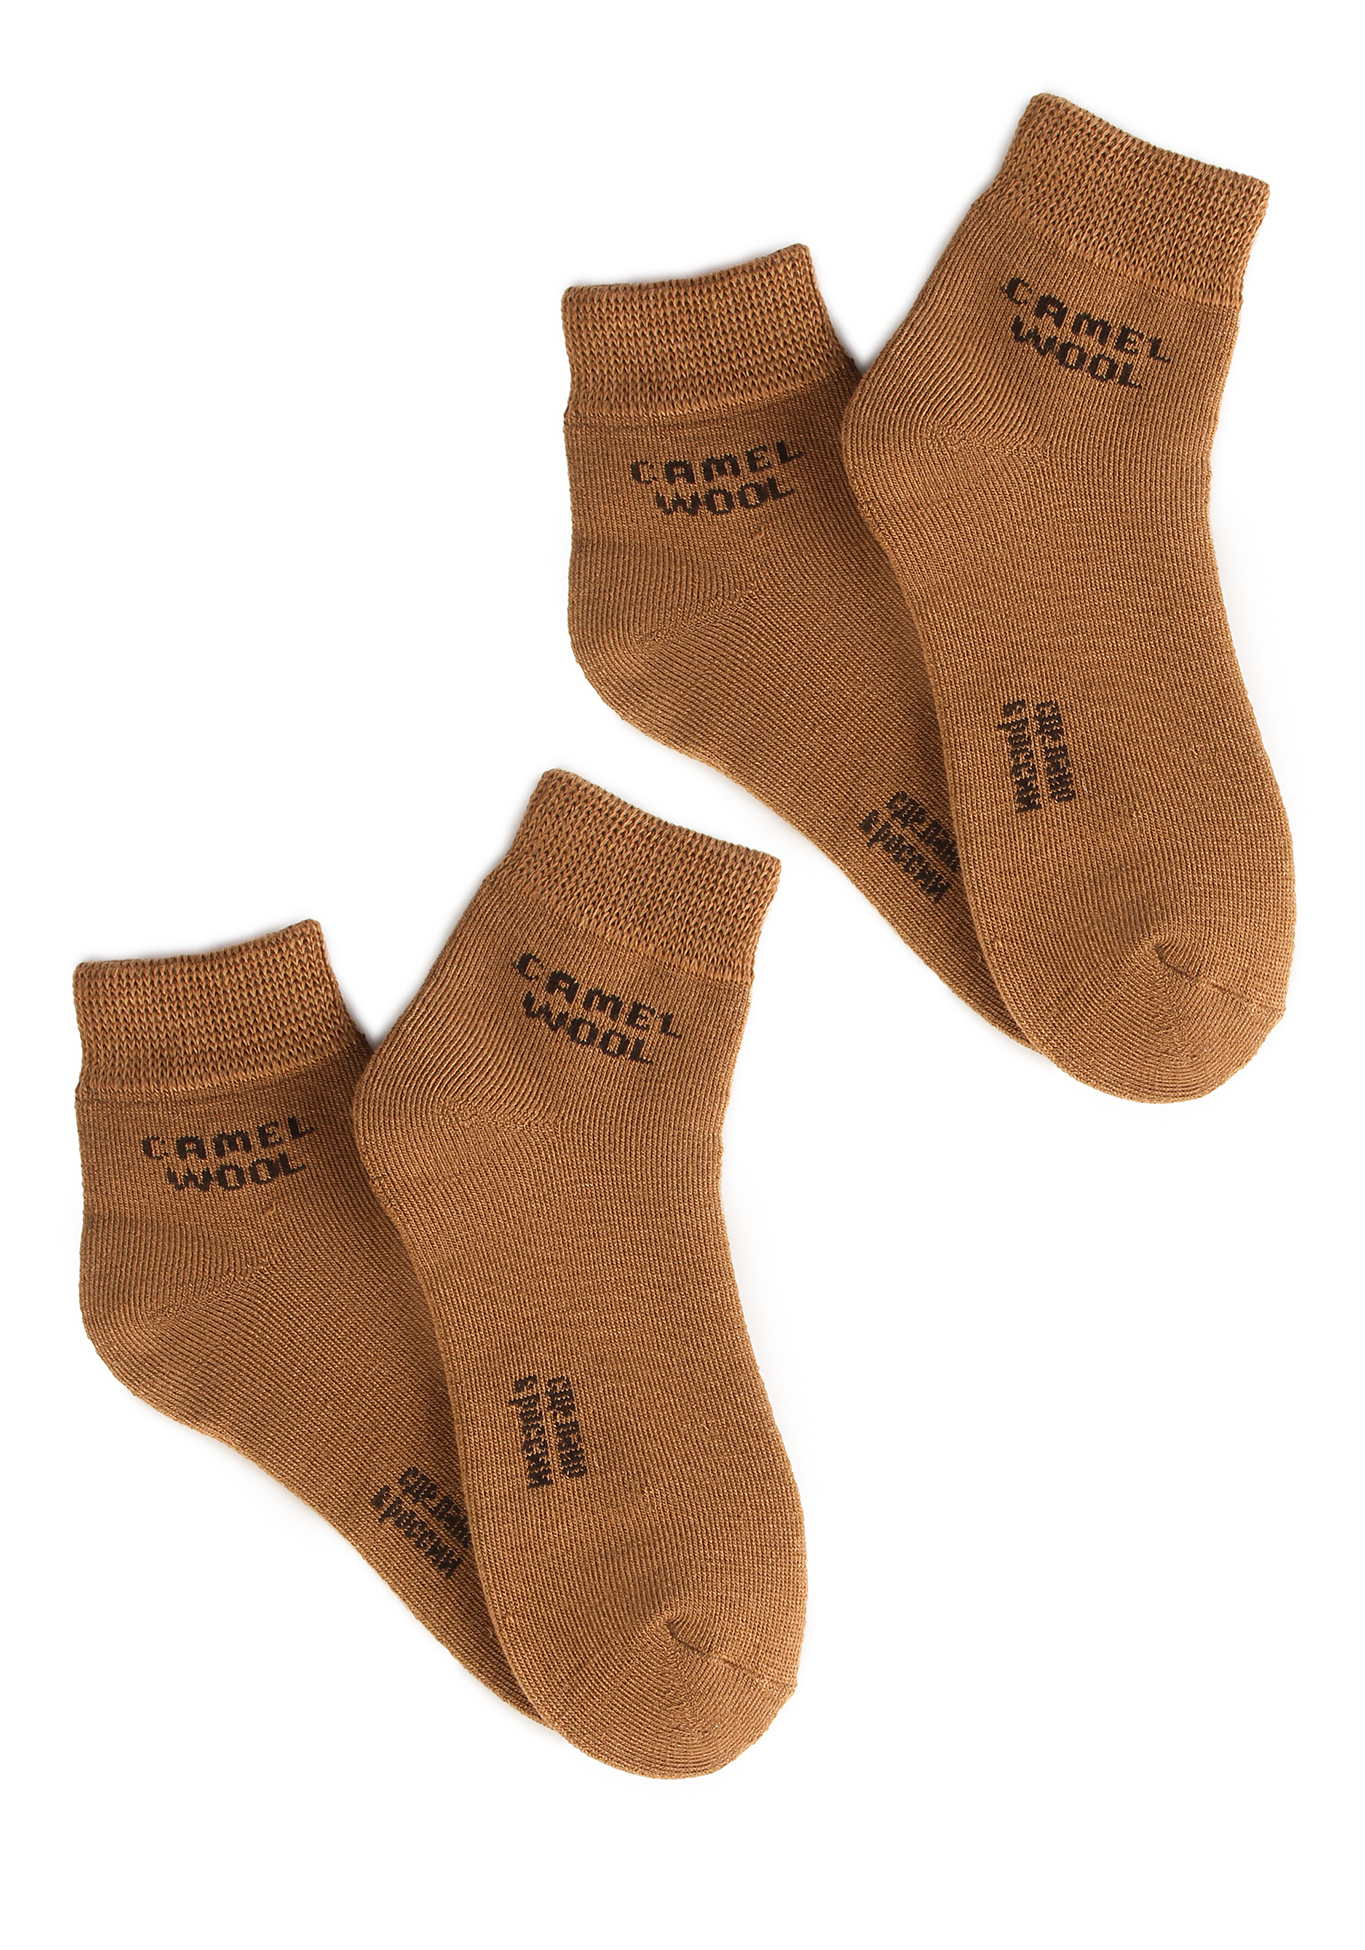 Носки махровые из верблюжьей шерсти, 2 шт. Doctor ТМ, цвет светло-коричневый, размер 42-43 - фото 1